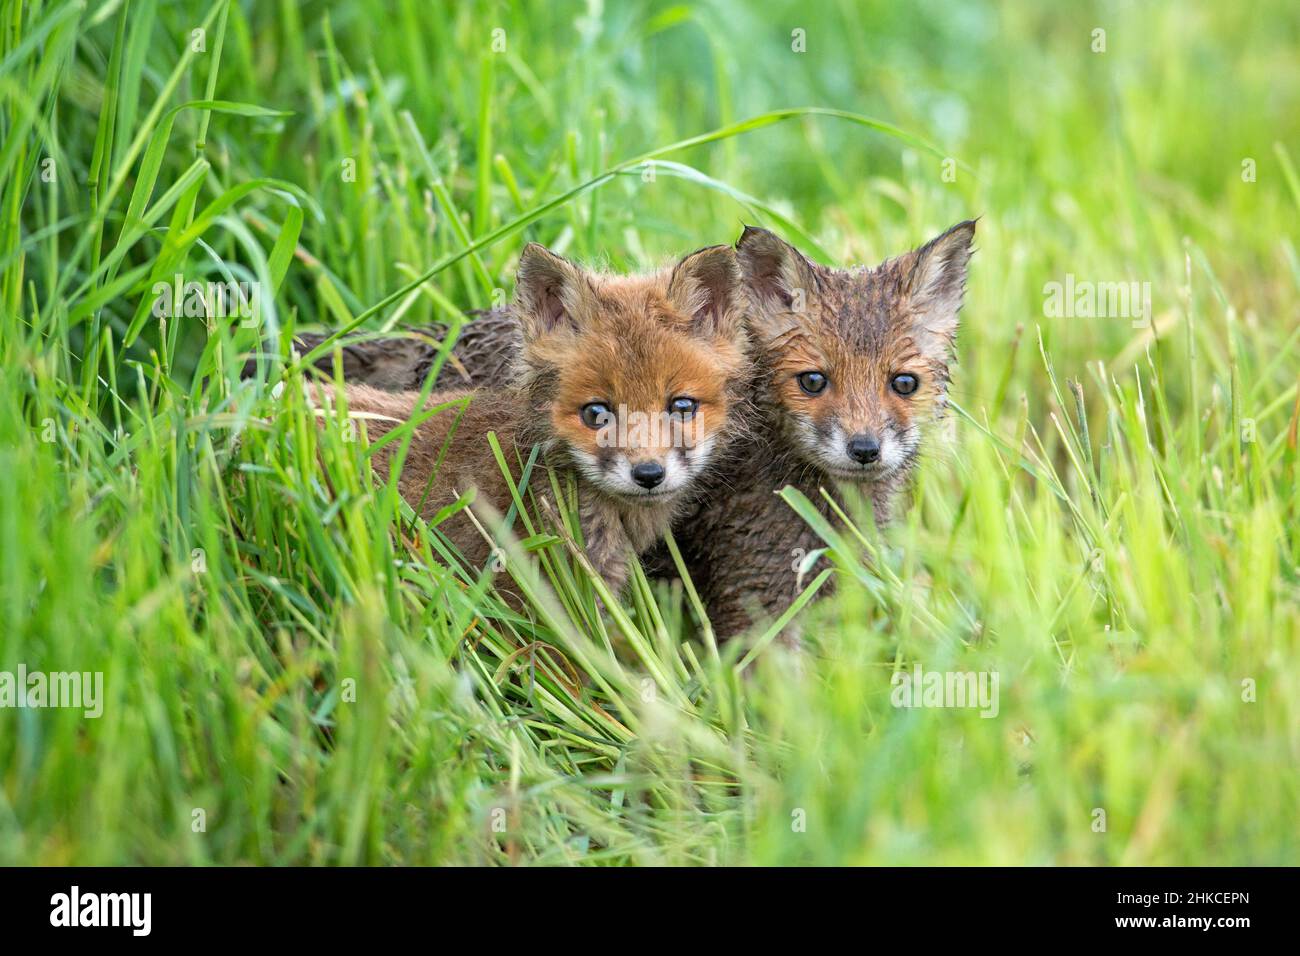 European Rd Fox (Vulpes vulpes) Dos cachorros alerta en la pradera, Alemania Foto de stock